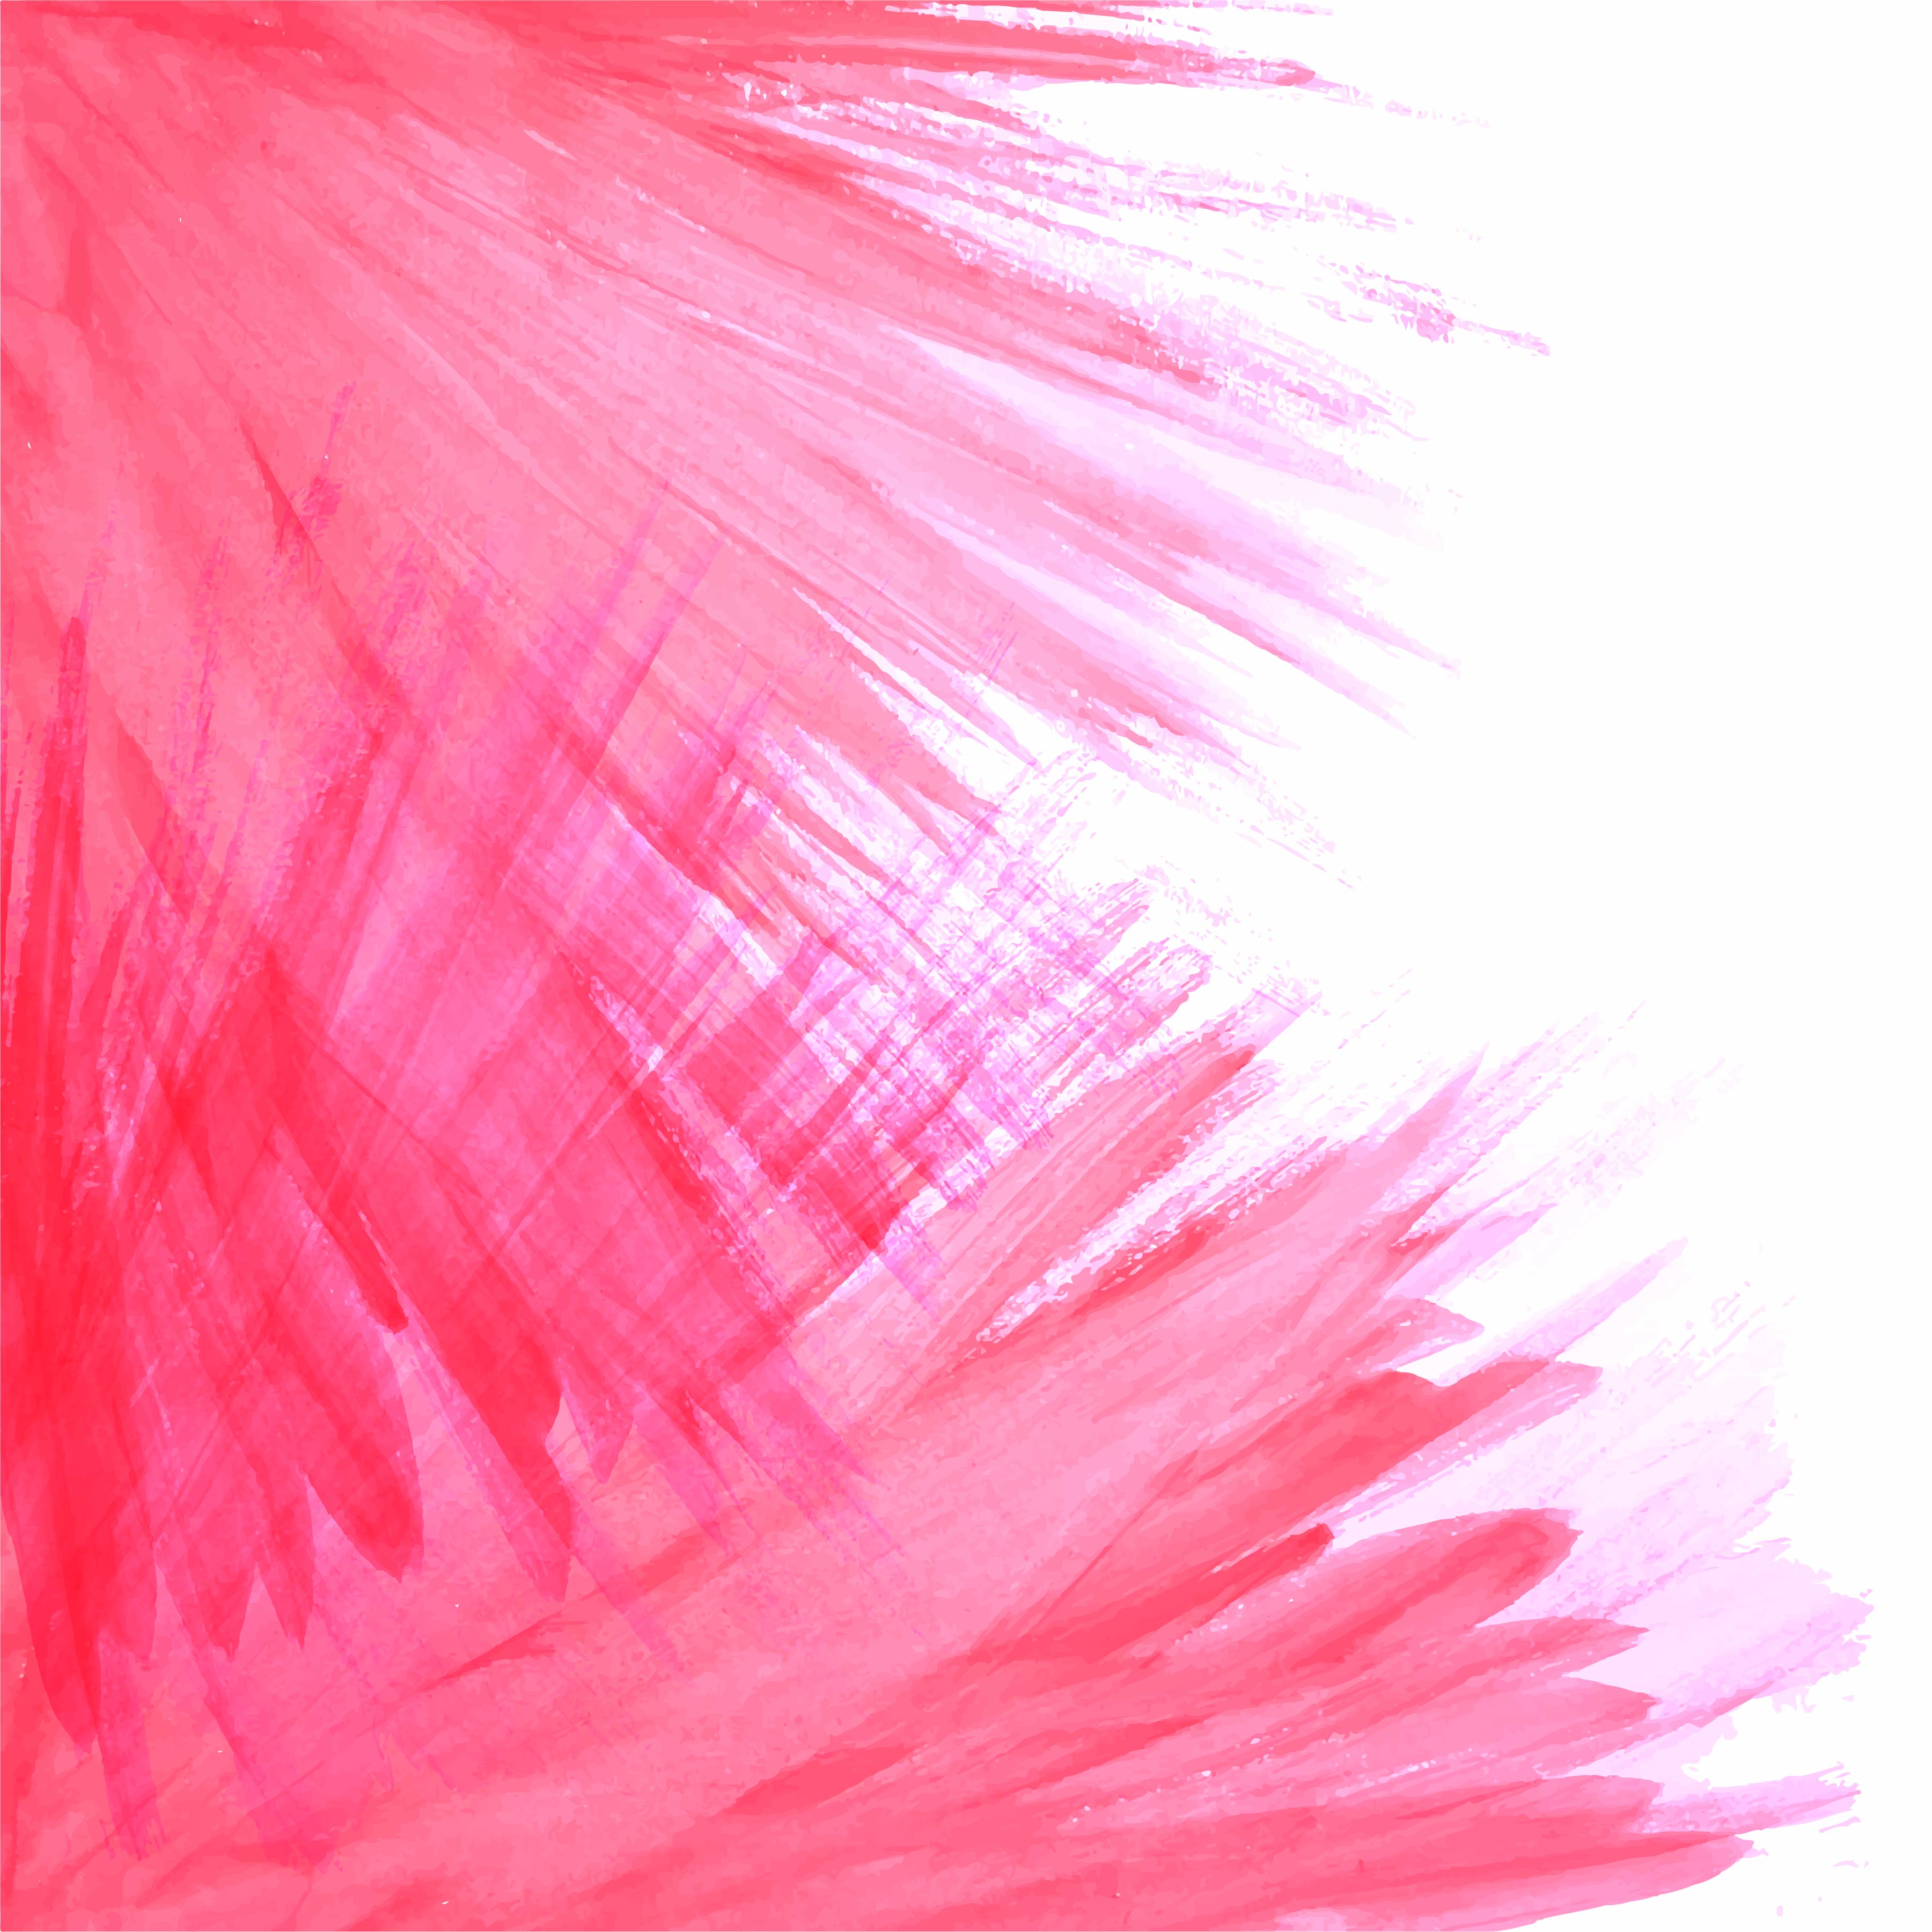 ペイントストロークの壁紙,ピンク,フェザー,毛皮,羽毛製の襟巻